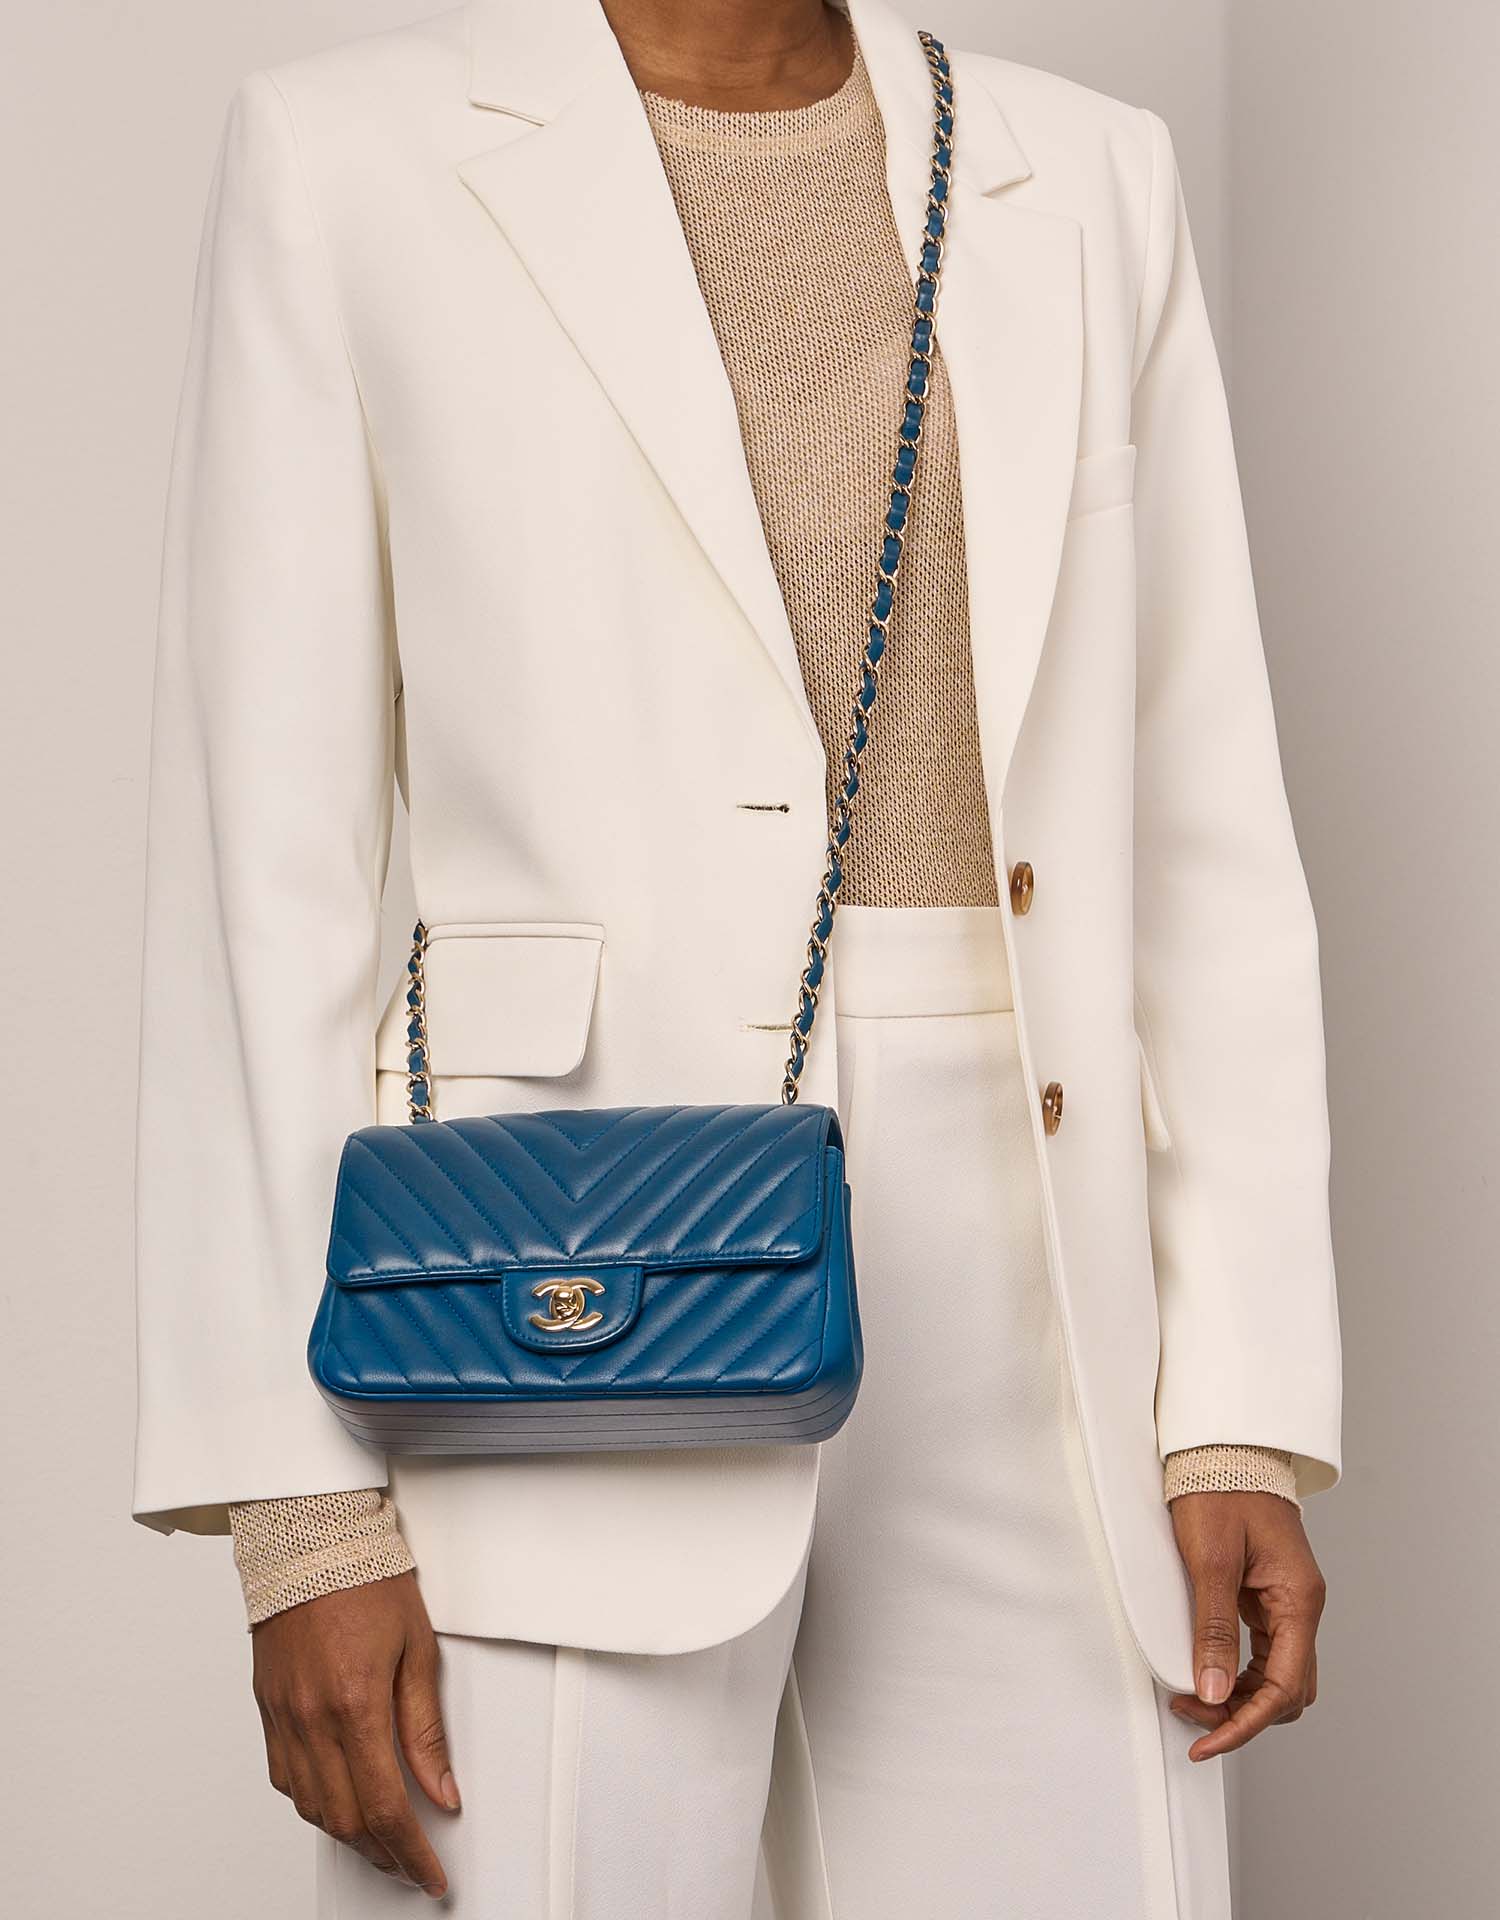 Sac Chanel d'occasion Timeless Mini Rectangle Agneau Bleu Bleu Modèle | Vendez votre sac de créateur sur Saclab.com